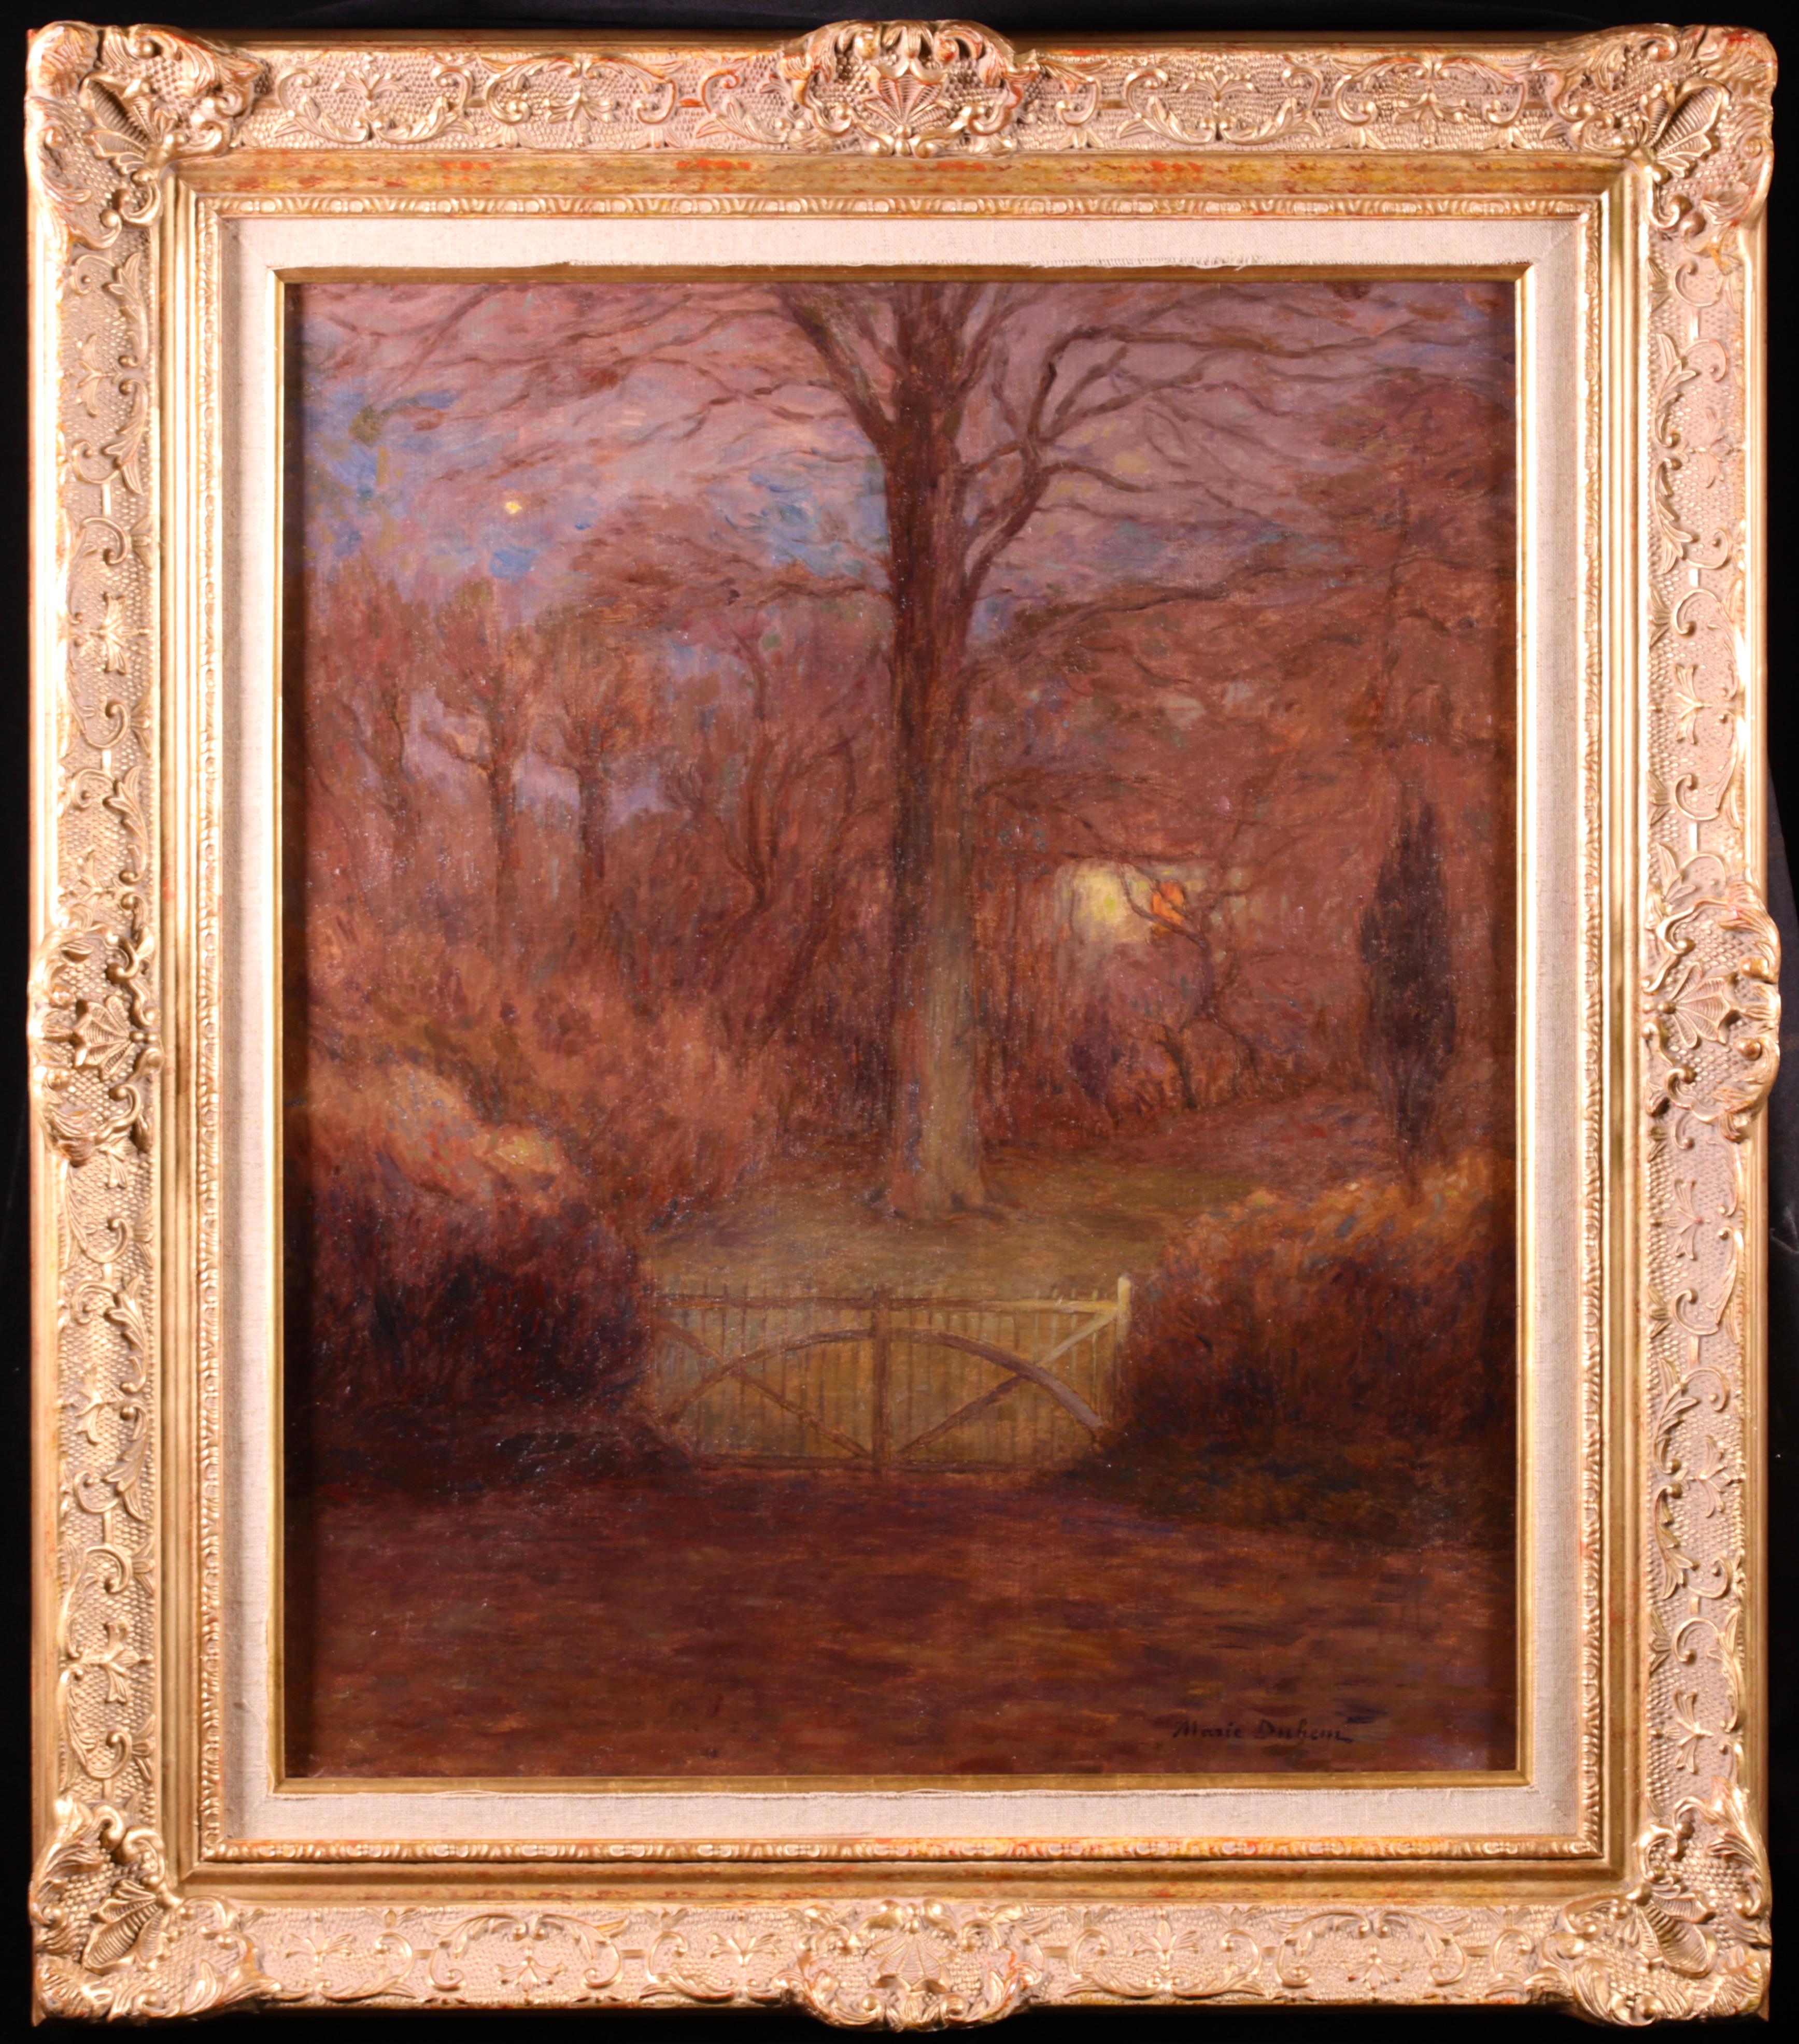 Signiert und betitelt Öl auf Leinwand Landschaft circa 1910 von Französisch Impressionist Maler Marie Duhem. Das Werk zeigt einen eingezäunten Garten, der von Büschen und Bäumen umgeben ist und in dessen Mitte ein hoher Baum steht. Am dunkelblauen